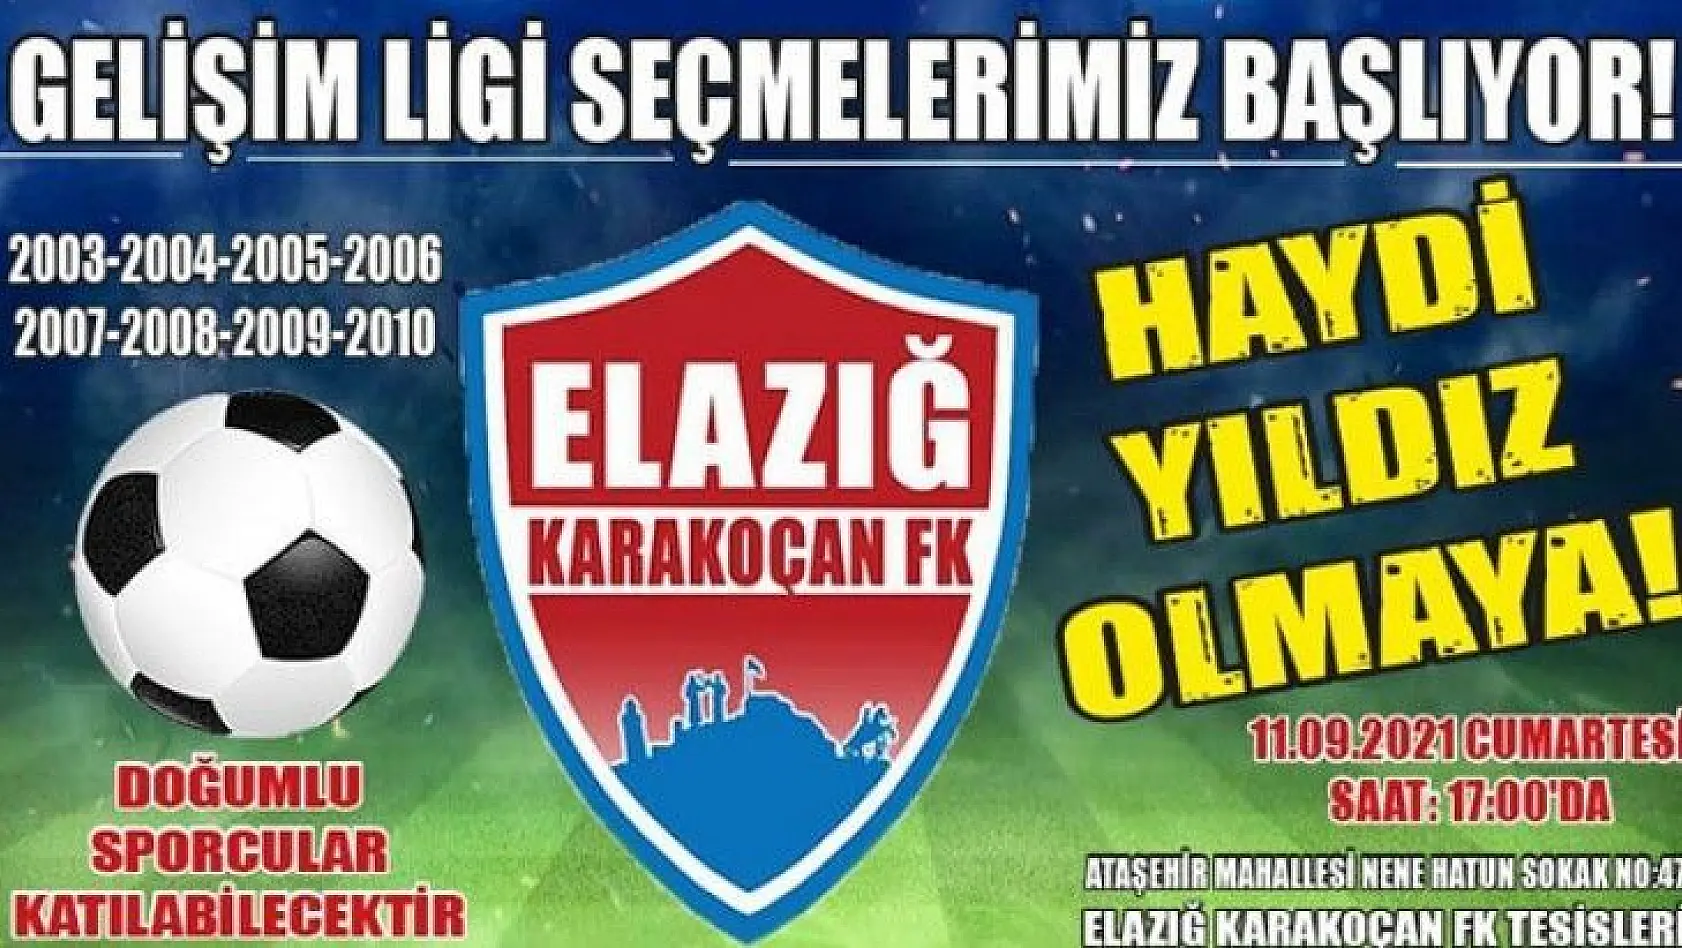 Elazığ Karakoçan FK, futbolcu seçmeleri yapacak